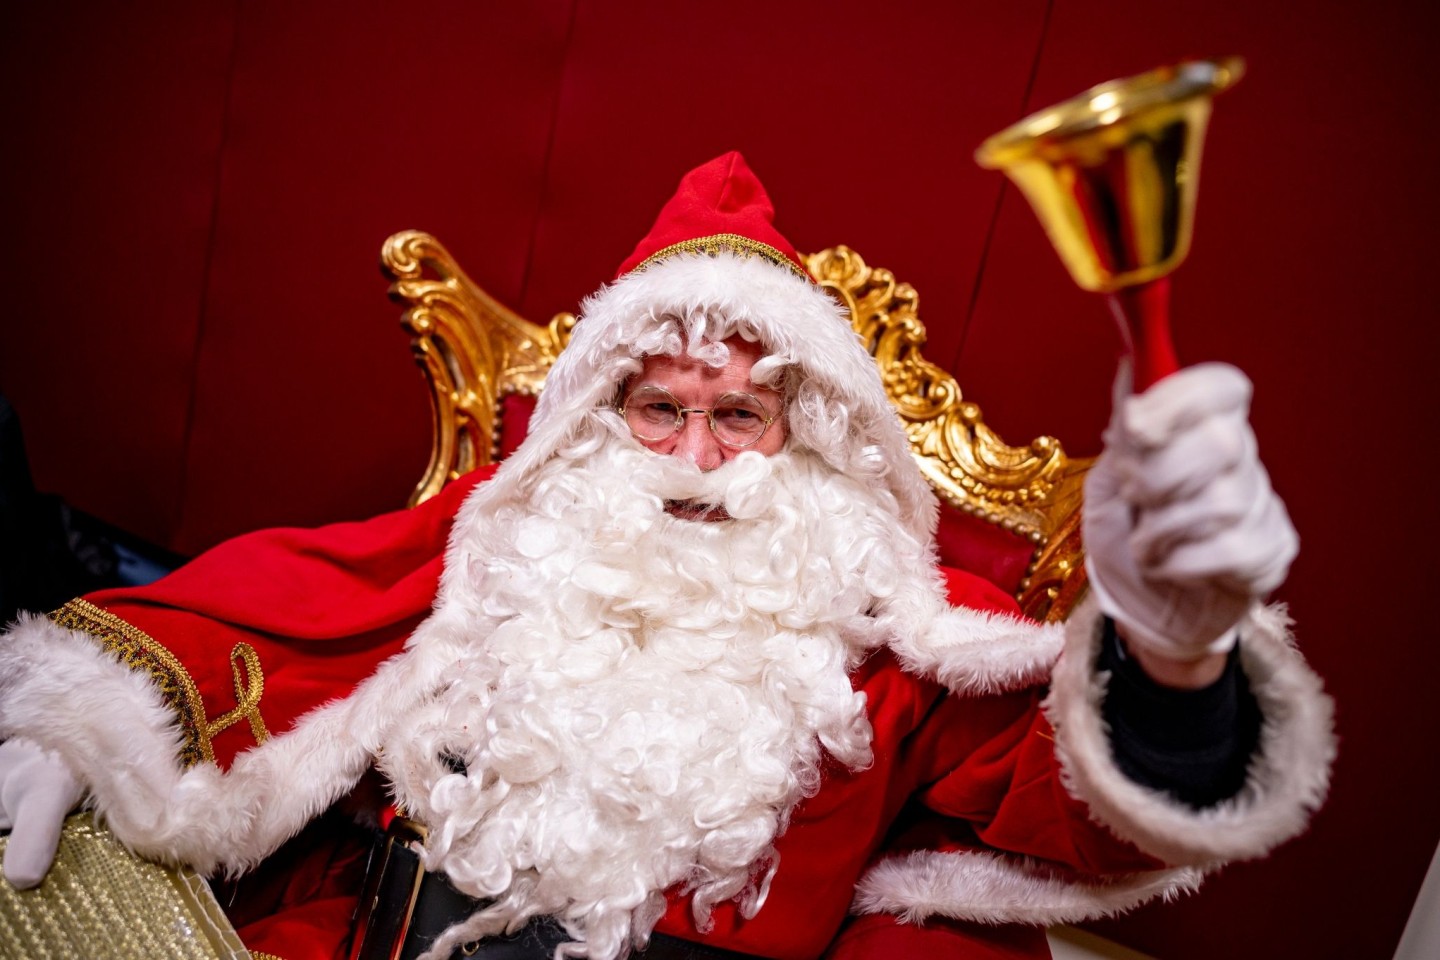 Hansjörg Rodewald als Weihnachtsmann verkleidet klingelt bei einem Workshop für neue Weihnachtsmänner mit einer Glocke.